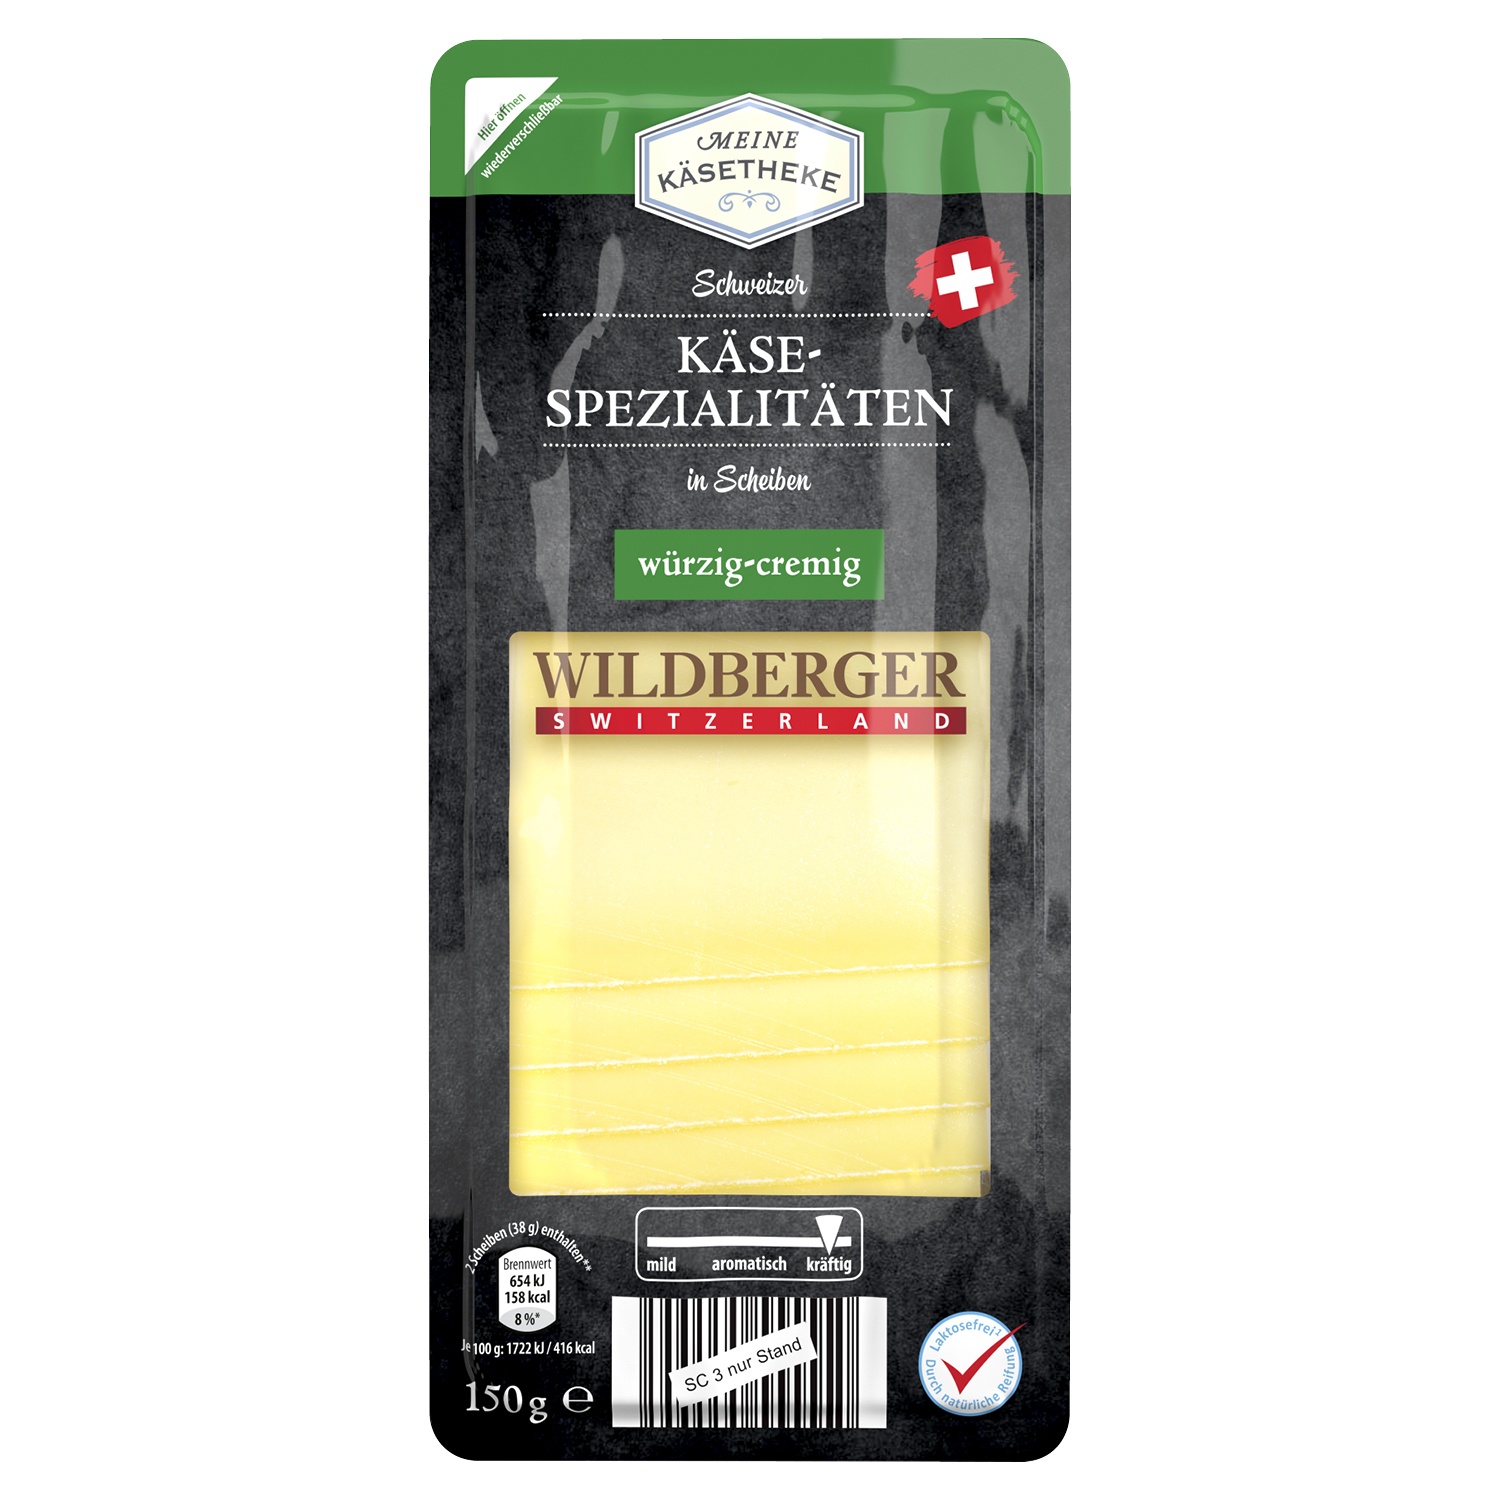 MEINE KÄSETHEKE Schweizer Käse 150 g